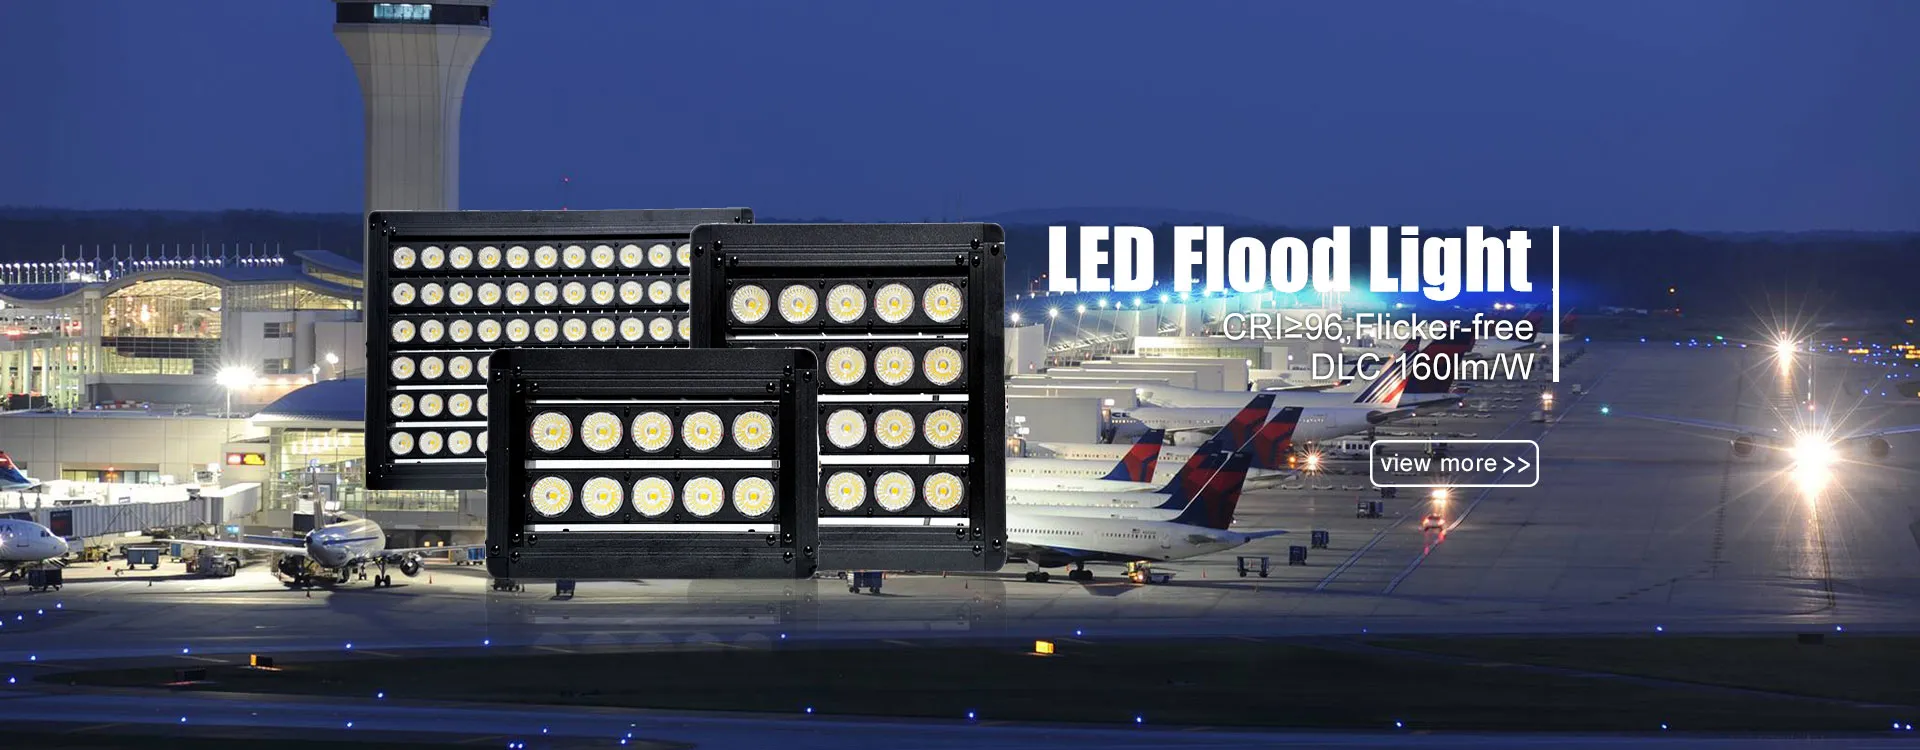 Flood Light Manufacturers 